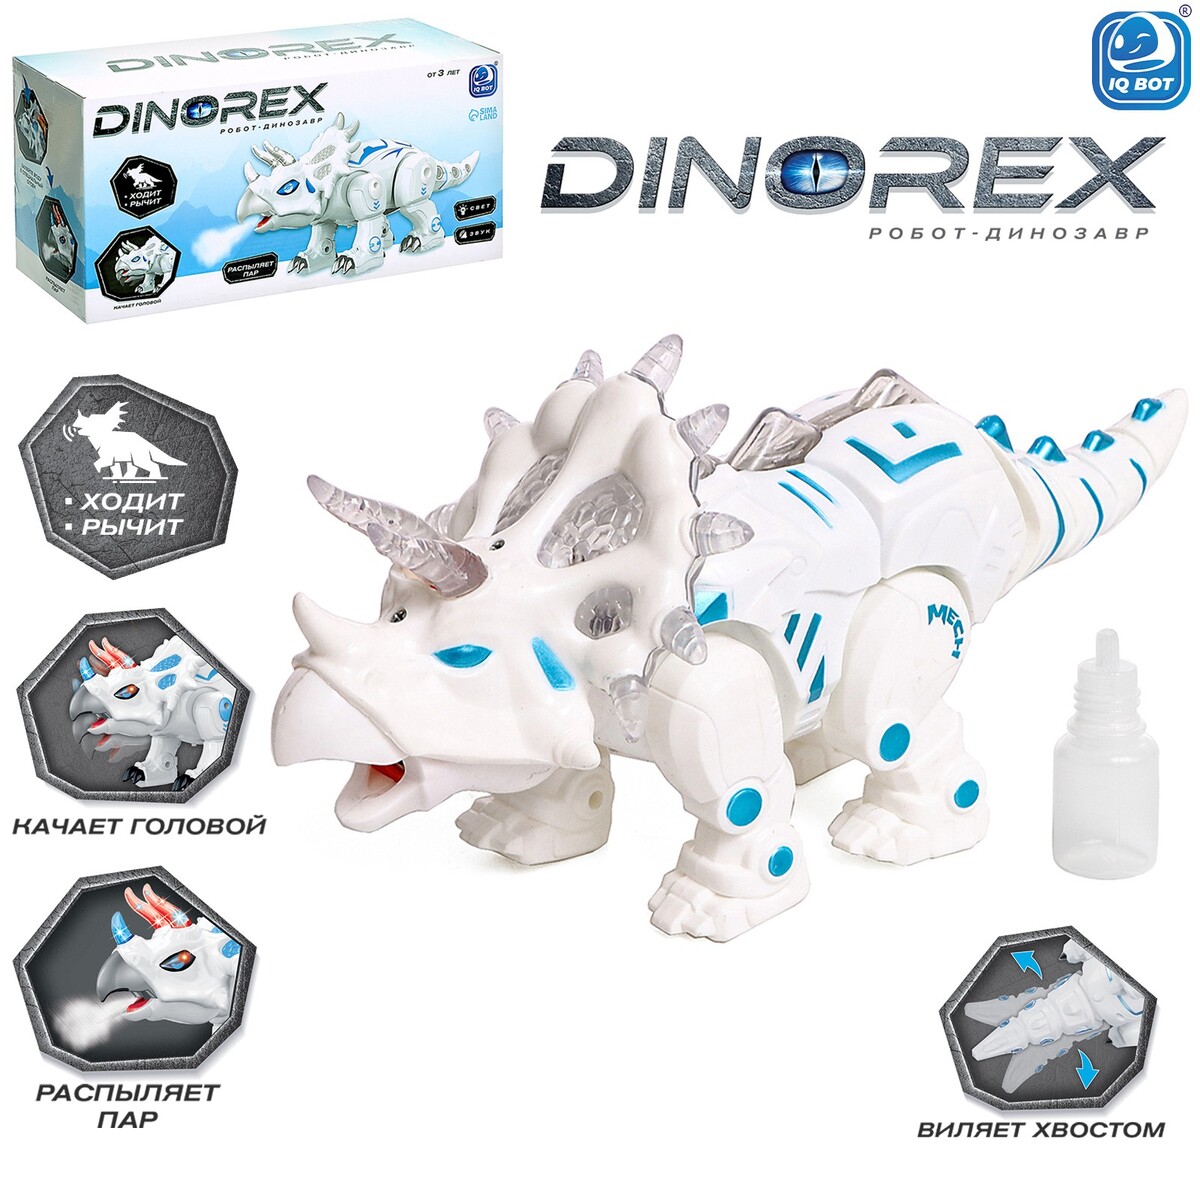 Робот динозавр dinorex iq bot, интерактивный: световые и звуковые эффекты, на батарейках IQ BOT